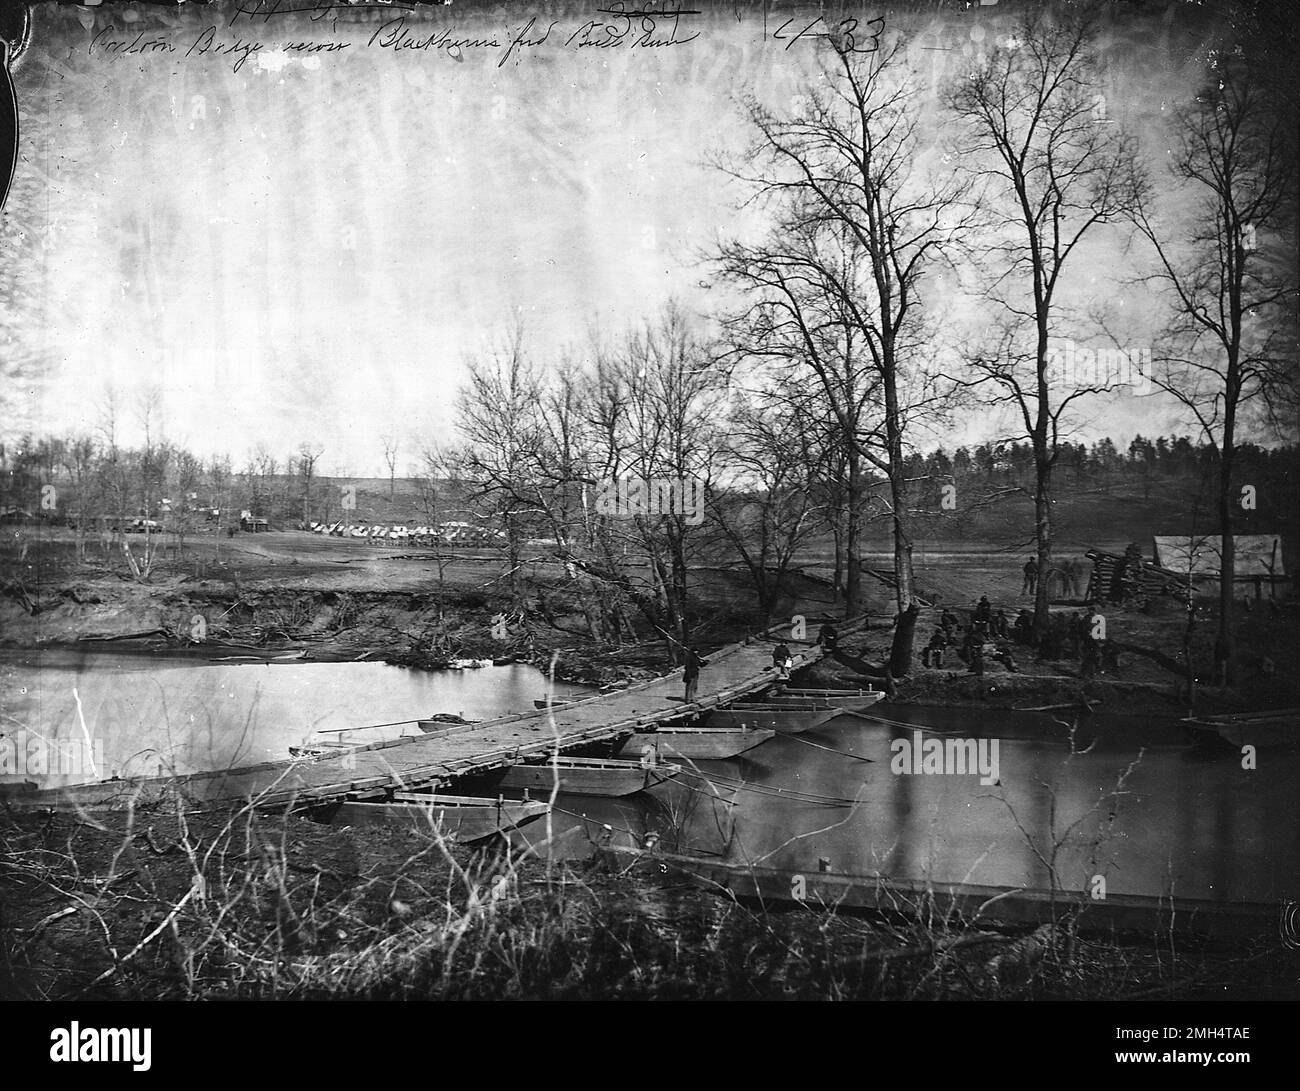 La batalla de Blackburn Ford tuvo lugar el 18 de julio de 1861 en Virginia Occidental. Fue ganado por la Confederación. Esta foto es del cruce del río después de la batalla Foto de stock